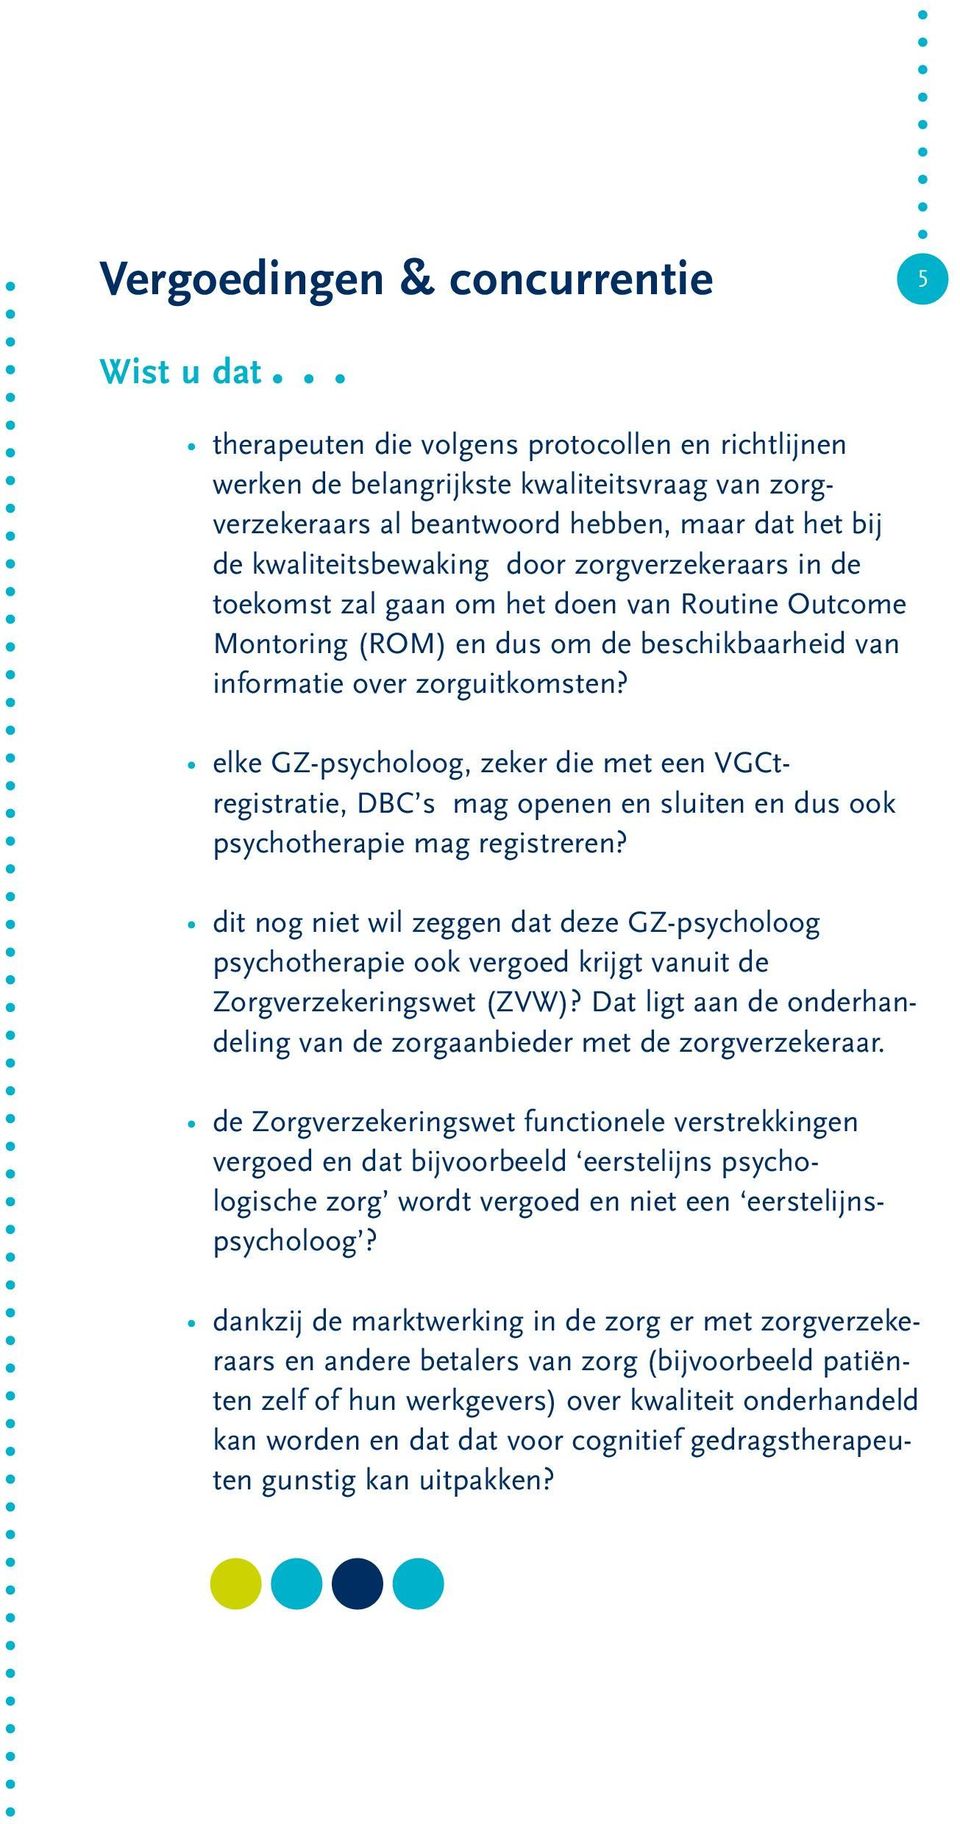 elke GZ-psycholoog, zeker die met een VGCtregistratie, DBC s mag openen en sluiten en dus ook psychotherapie mag registreren?